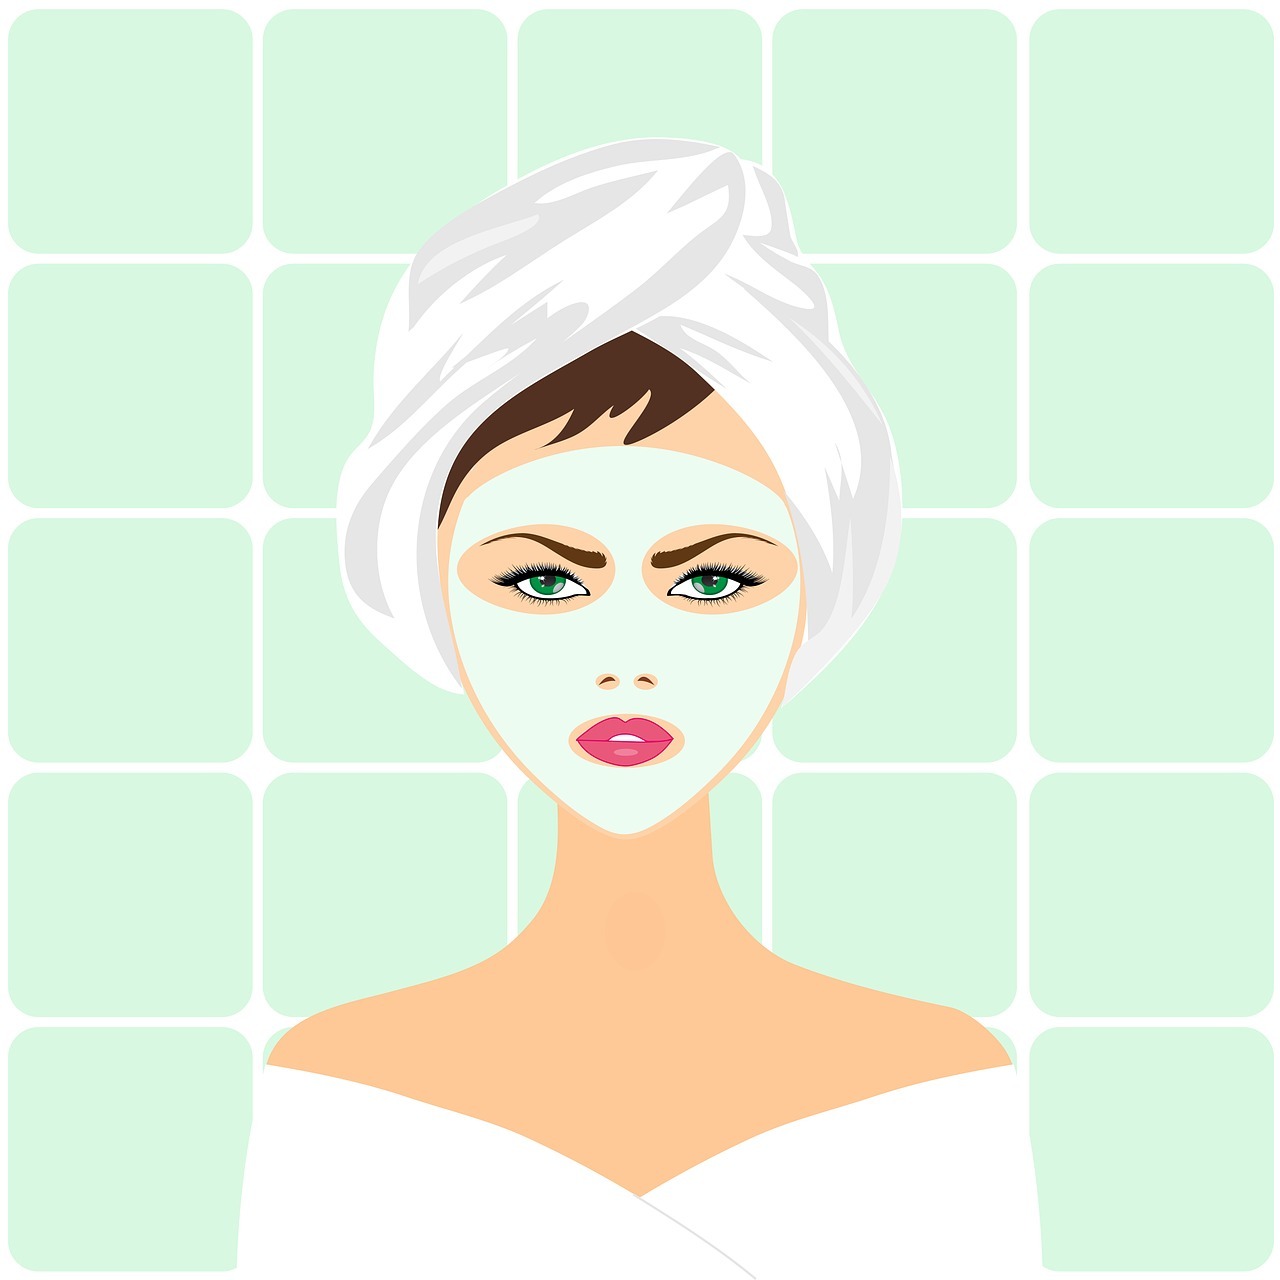 beauty treatment image source pixabay dot com.